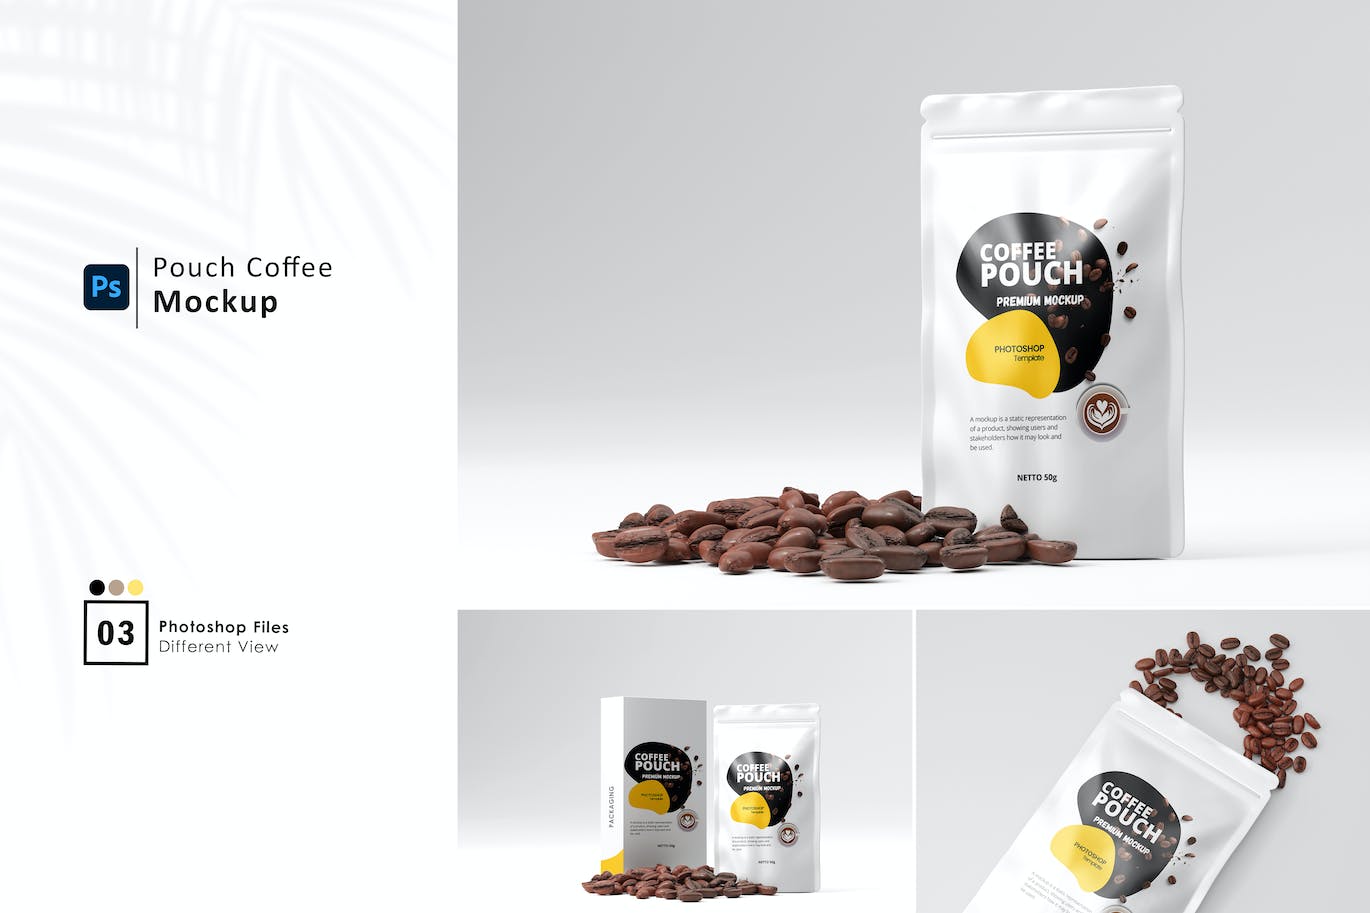 咖啡豆包装袋设计样机 (PSD)